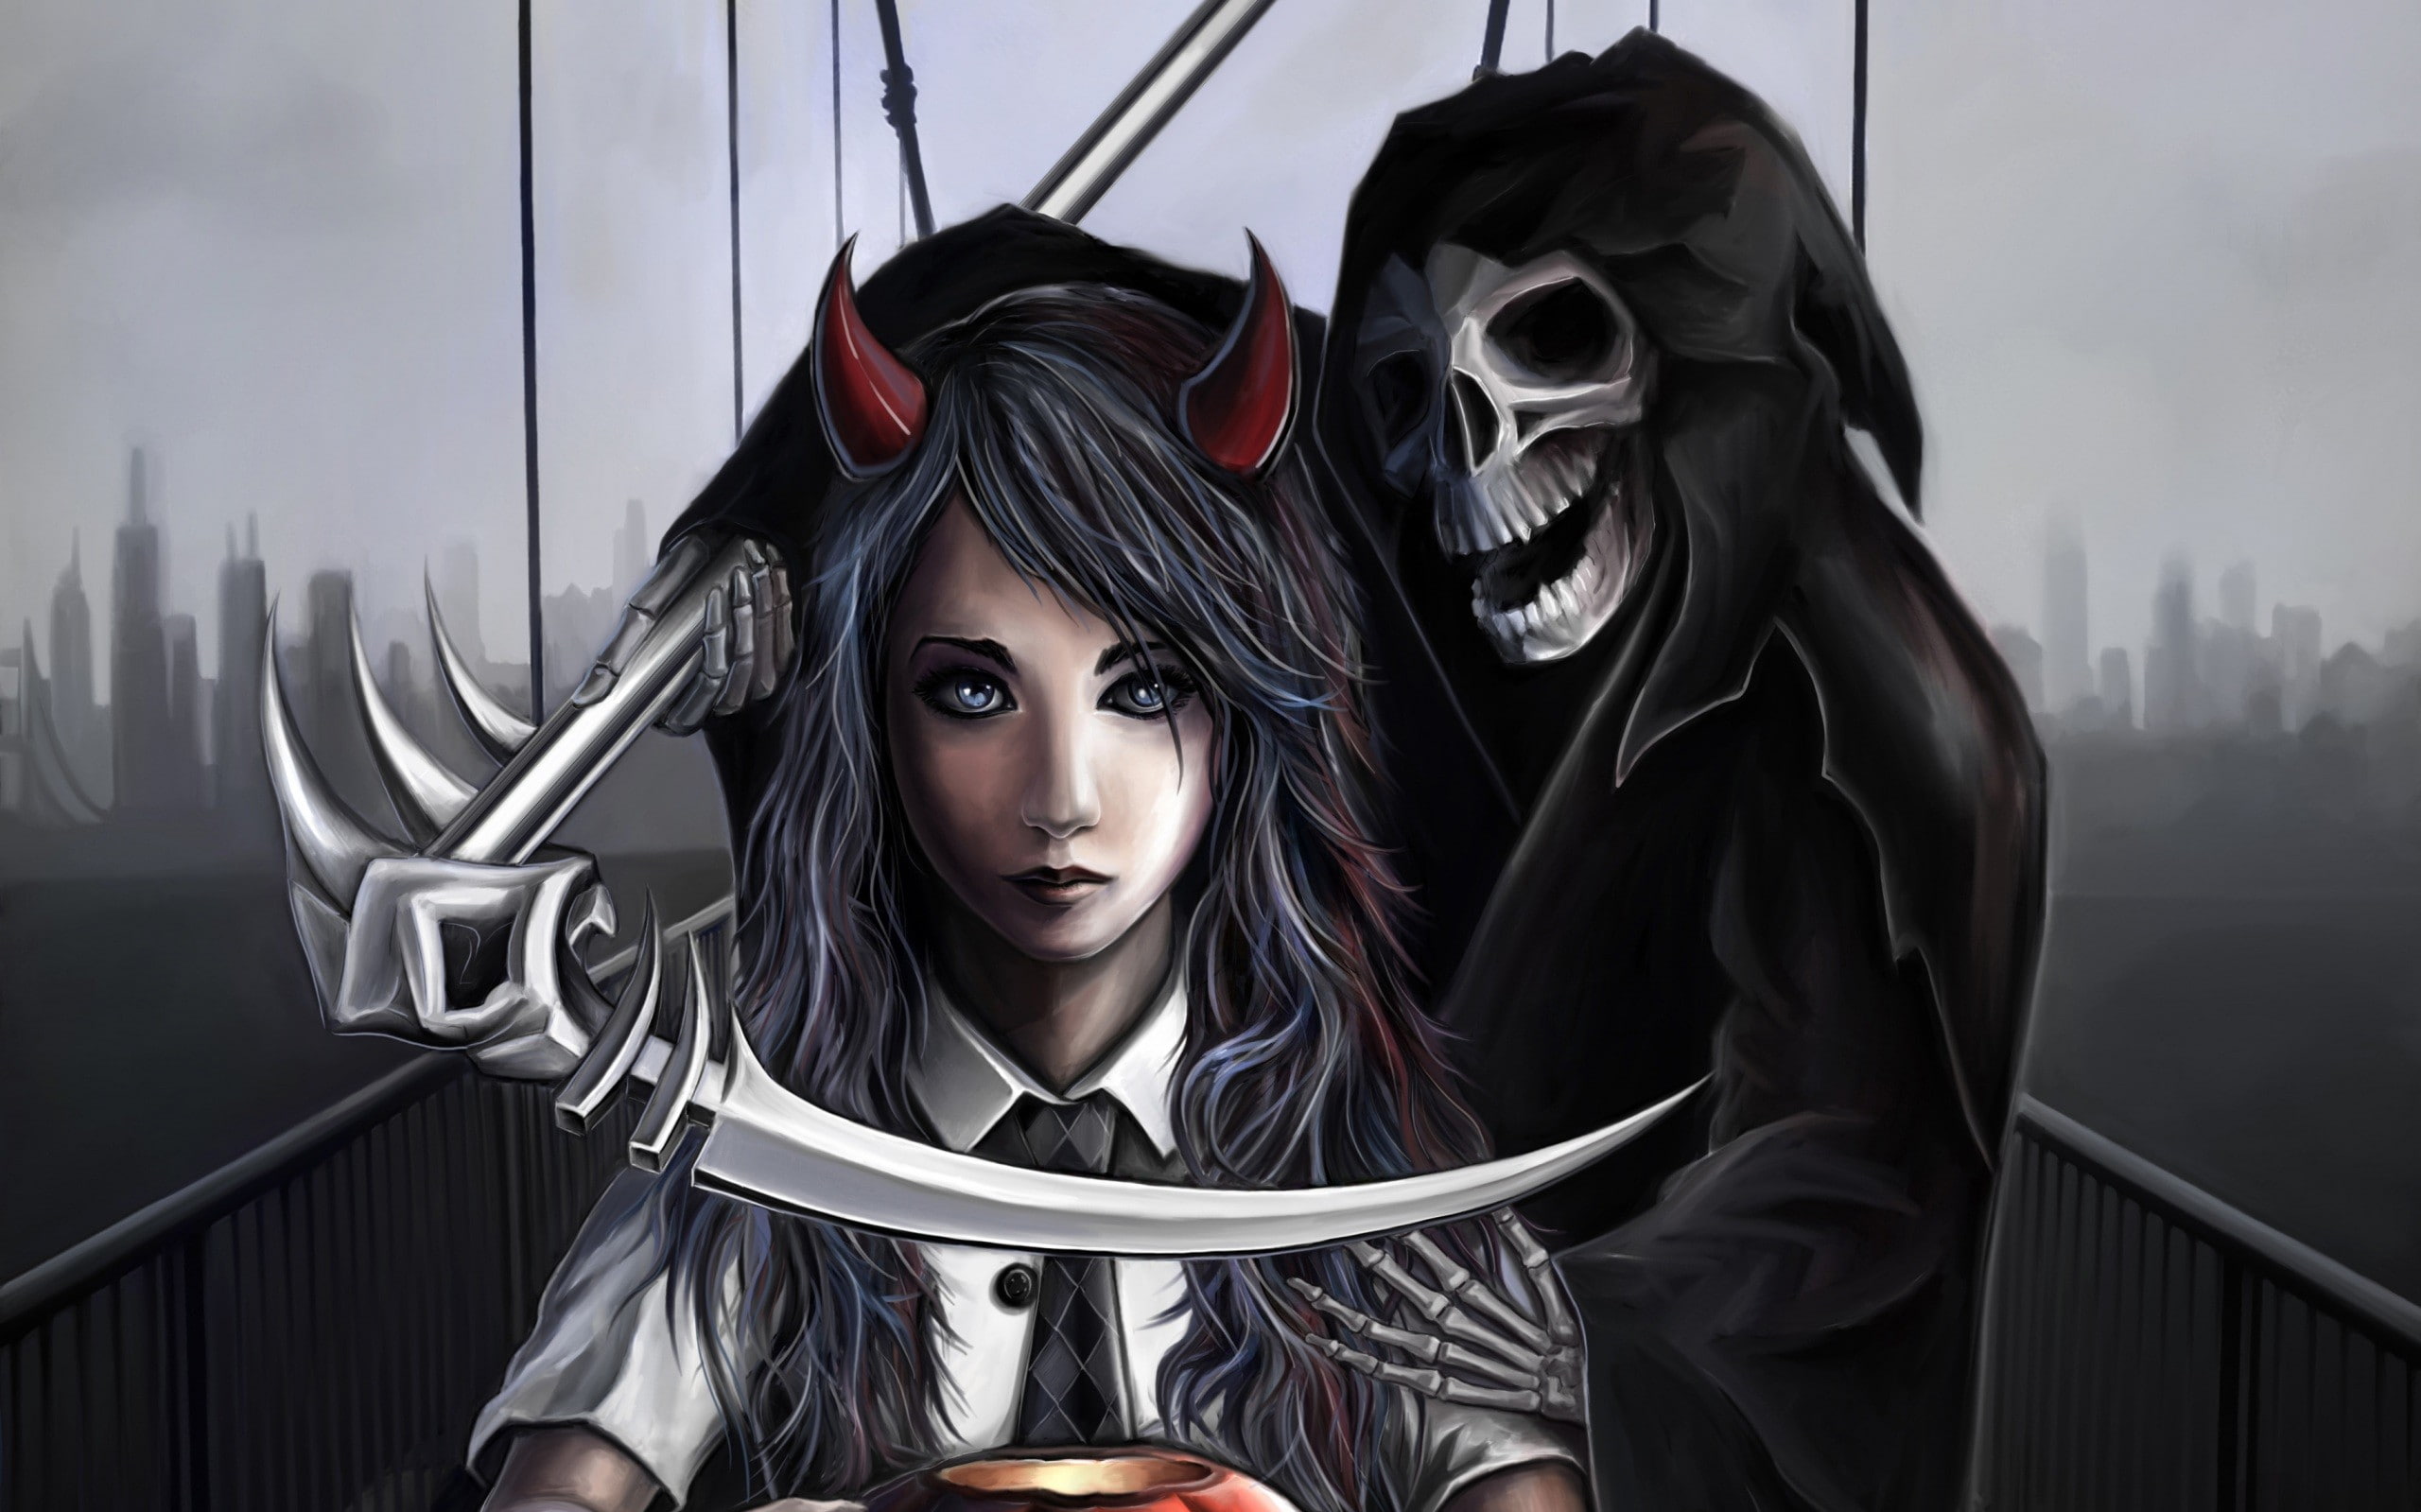 grim reaper women skull skeleton bones digital art scythe horns bridge devils death spooky cityscape